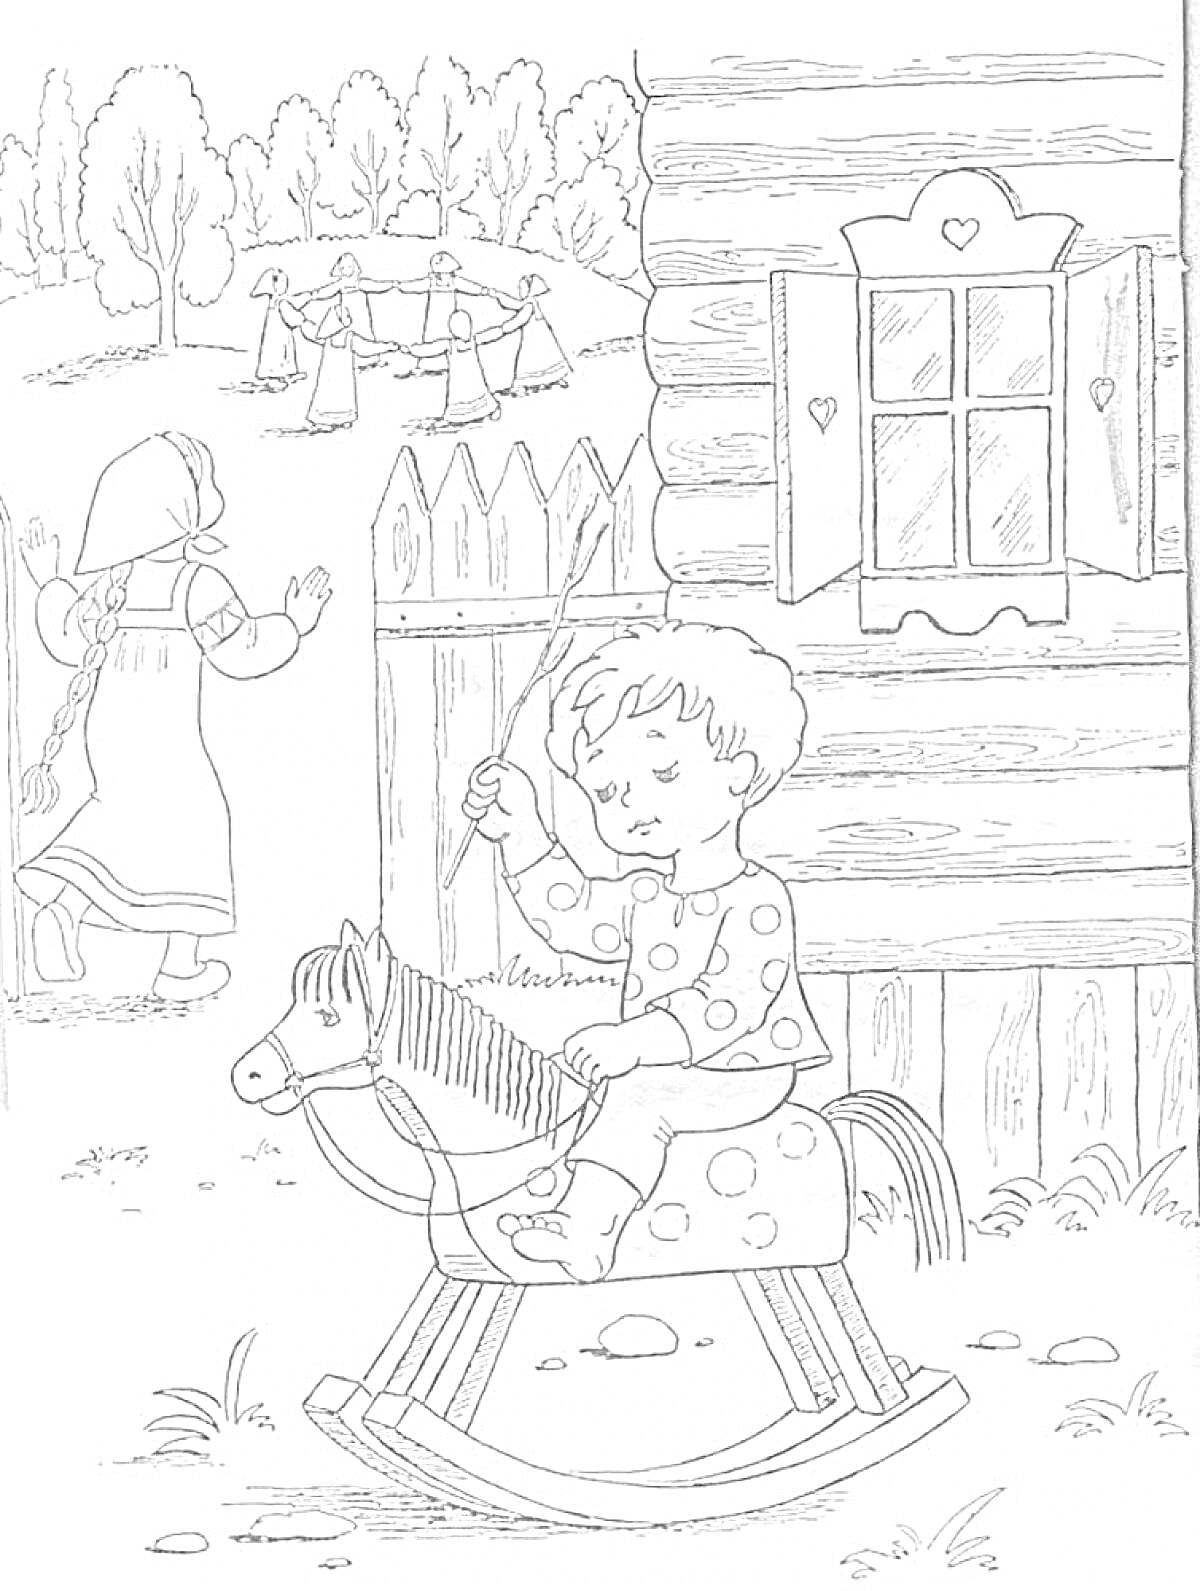 Раскраска Мальчик на деревянной лошадке, девочка у забора, играющие дети вдали, деревенский дом